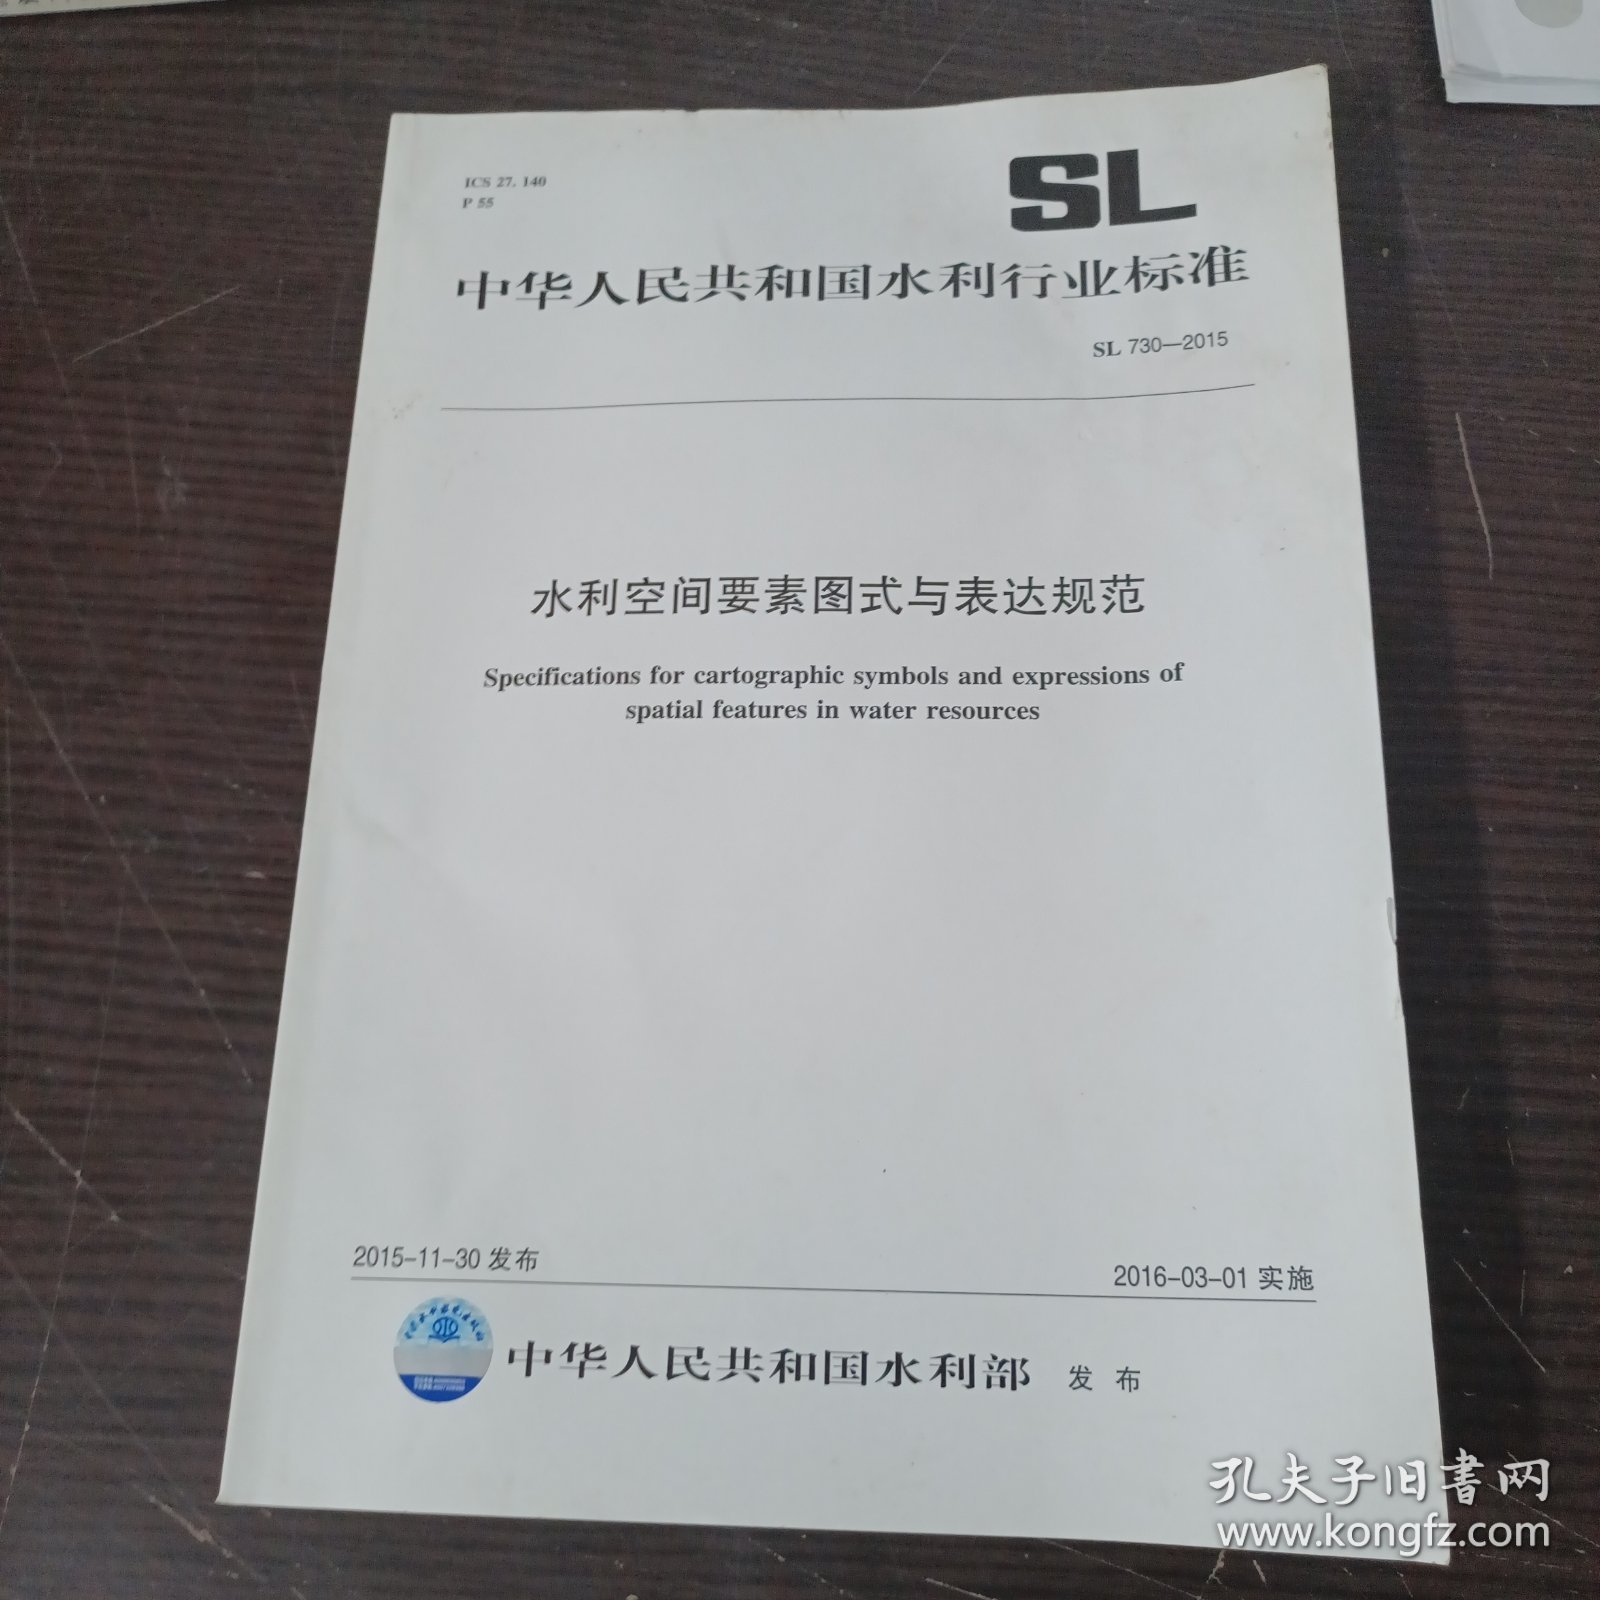 中华人民共和国水利行业标准：水利空间要素图式与表达规范